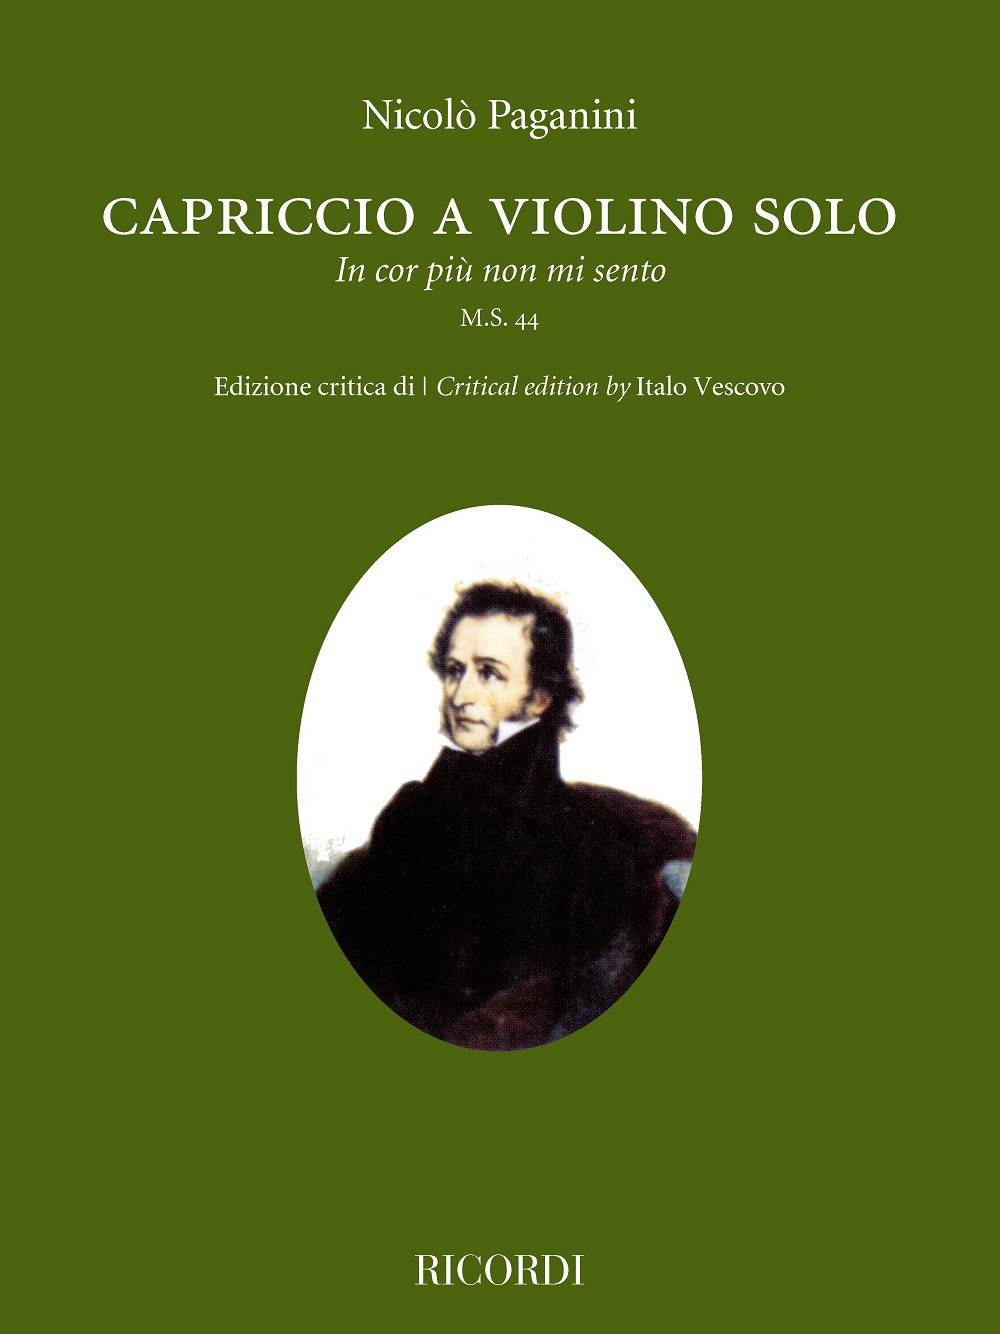 Niccolò Paganini: Capriccio a violino solo 